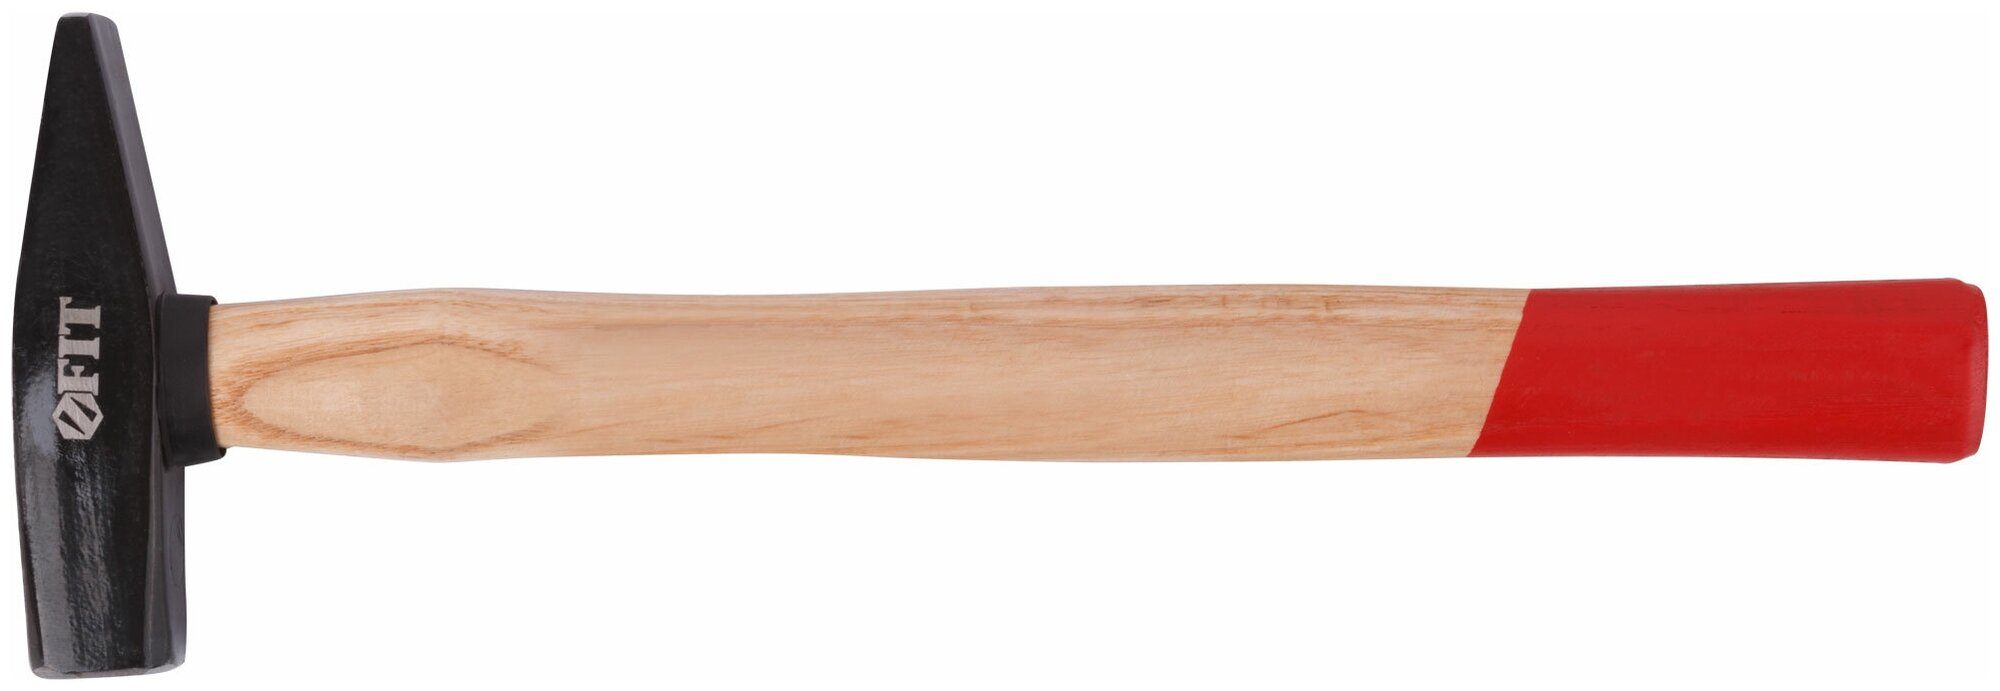 Молоток кованый, деревянная ручка 300 гр.